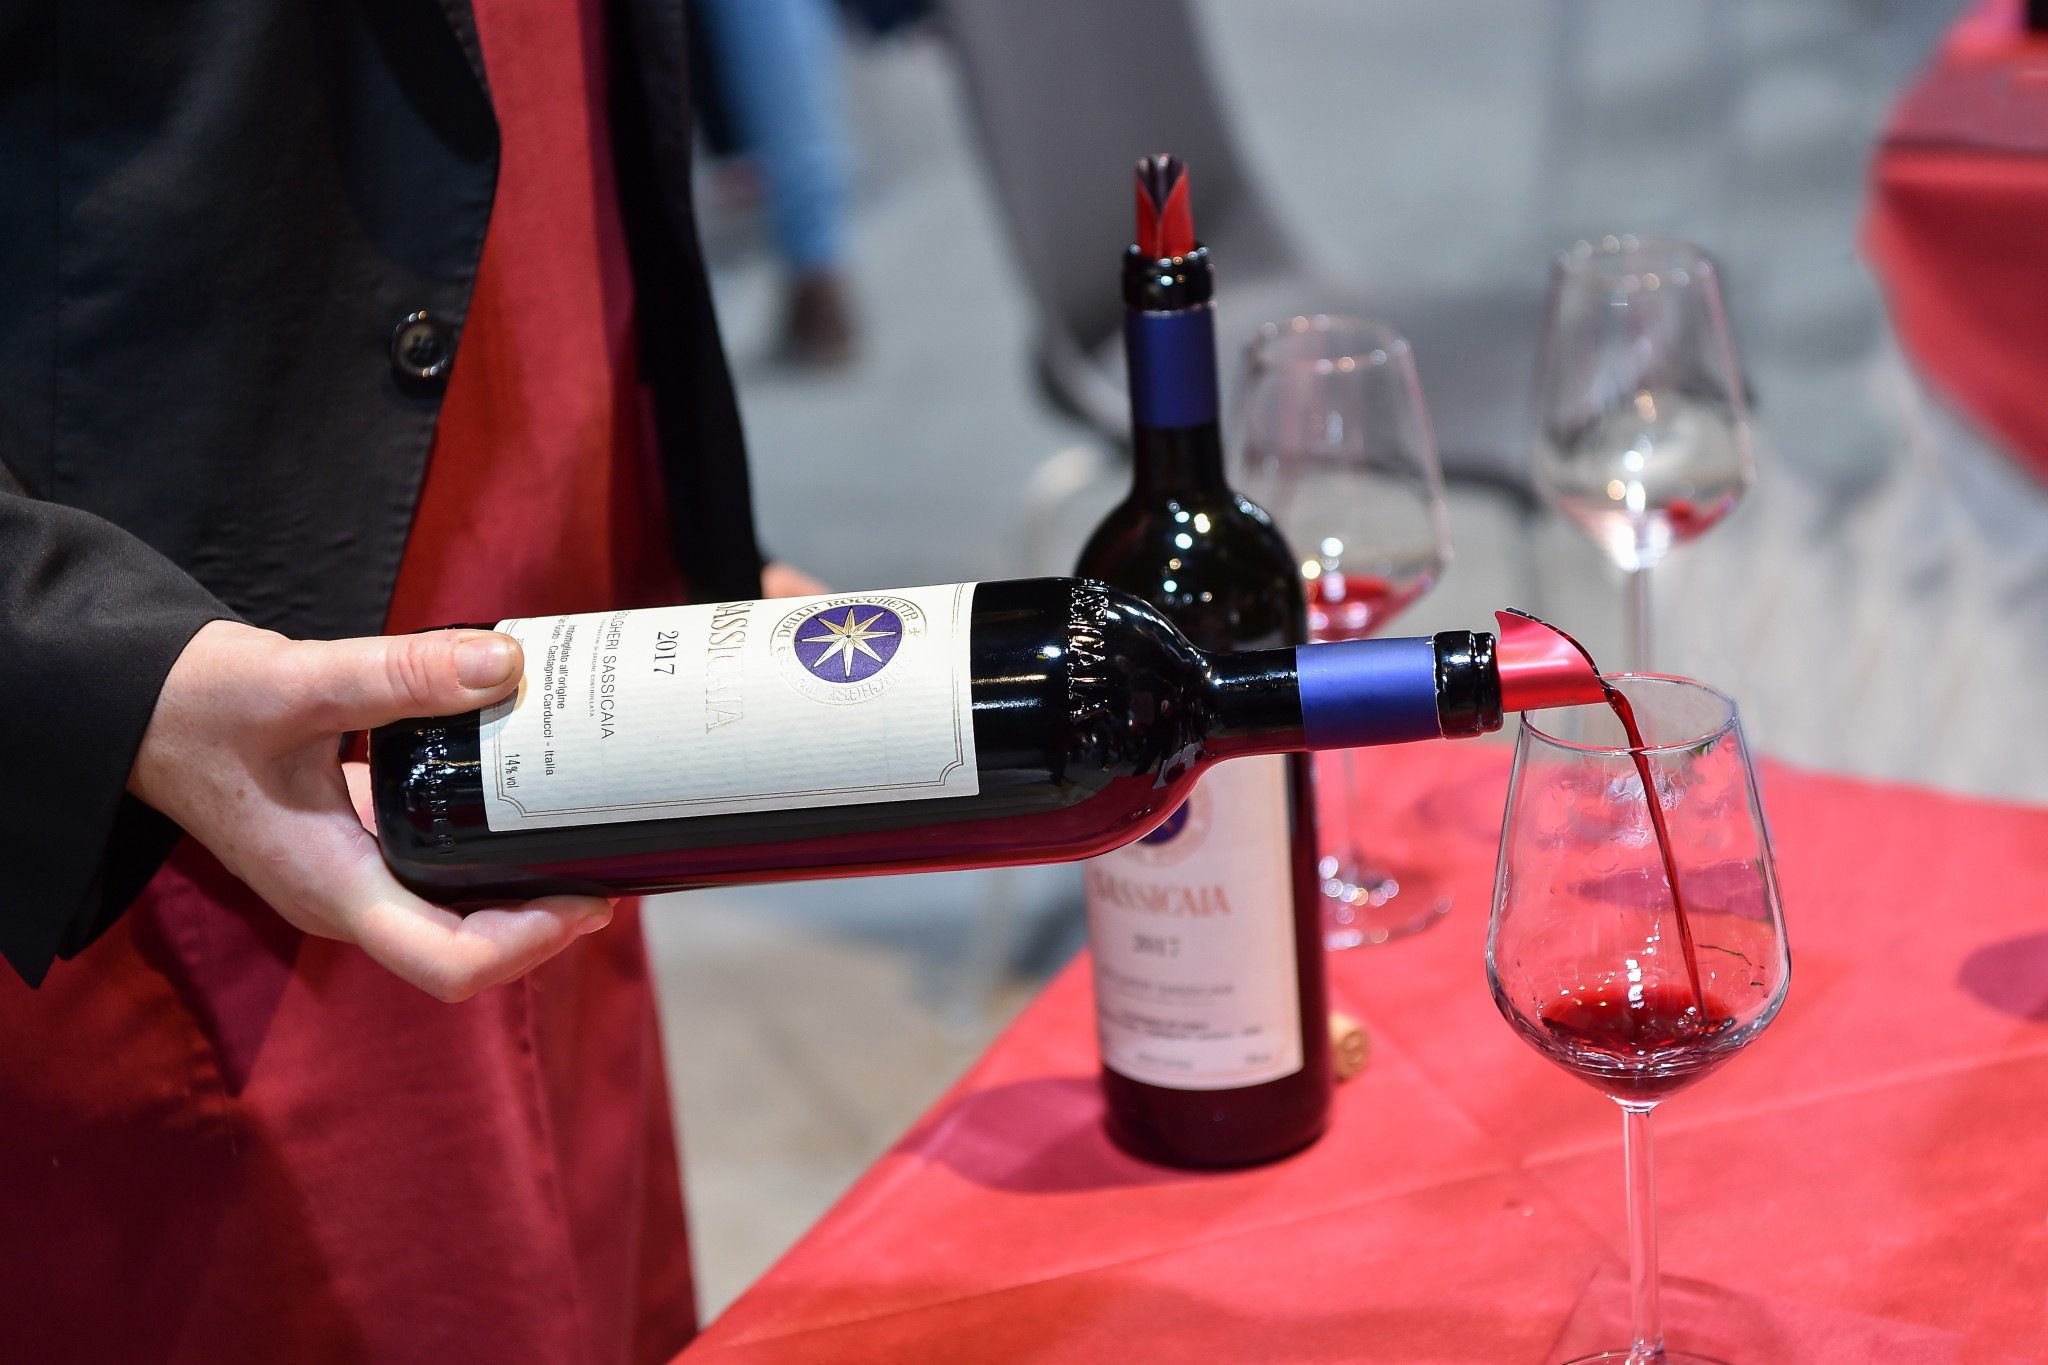 ไวน์ซูเปอร์ทัสกัน (Super Tuscan) คืออะไร? แหล่งกำเนิดของไวน์ซูเปอร์ทัสกัน พร้อมรายชื่อไวน์ซูเปอร์ทัสกันยอดนิยม